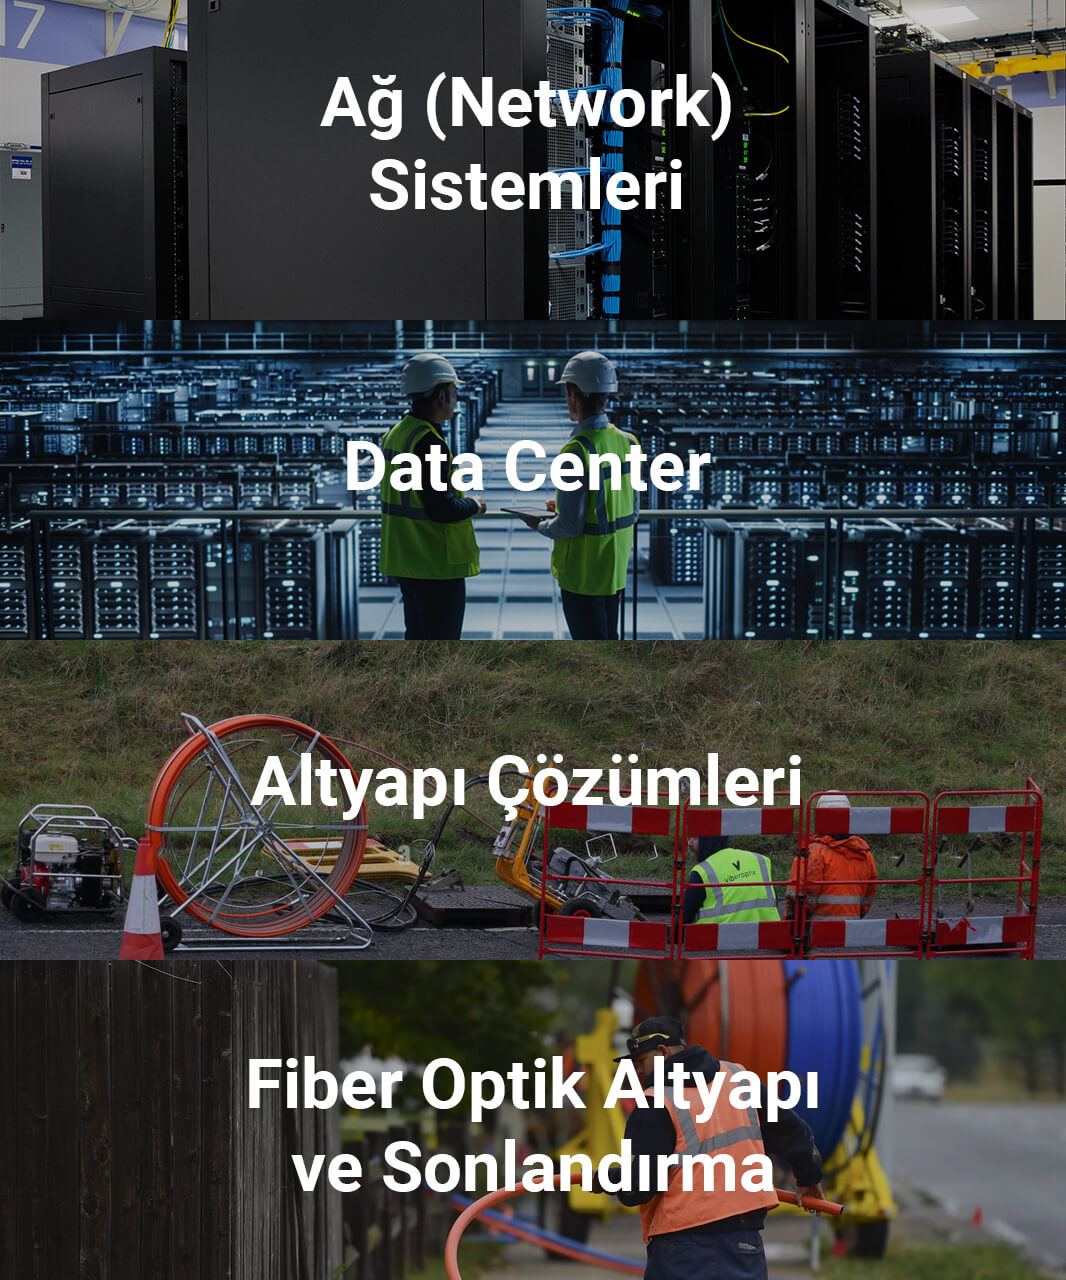 Ortadoğu Telekomünikasyon Fiber Optik Altyapı Sonlandırma, Alt Yapı Çözümleri, Data Center, Ağ (Network) Sistemleri